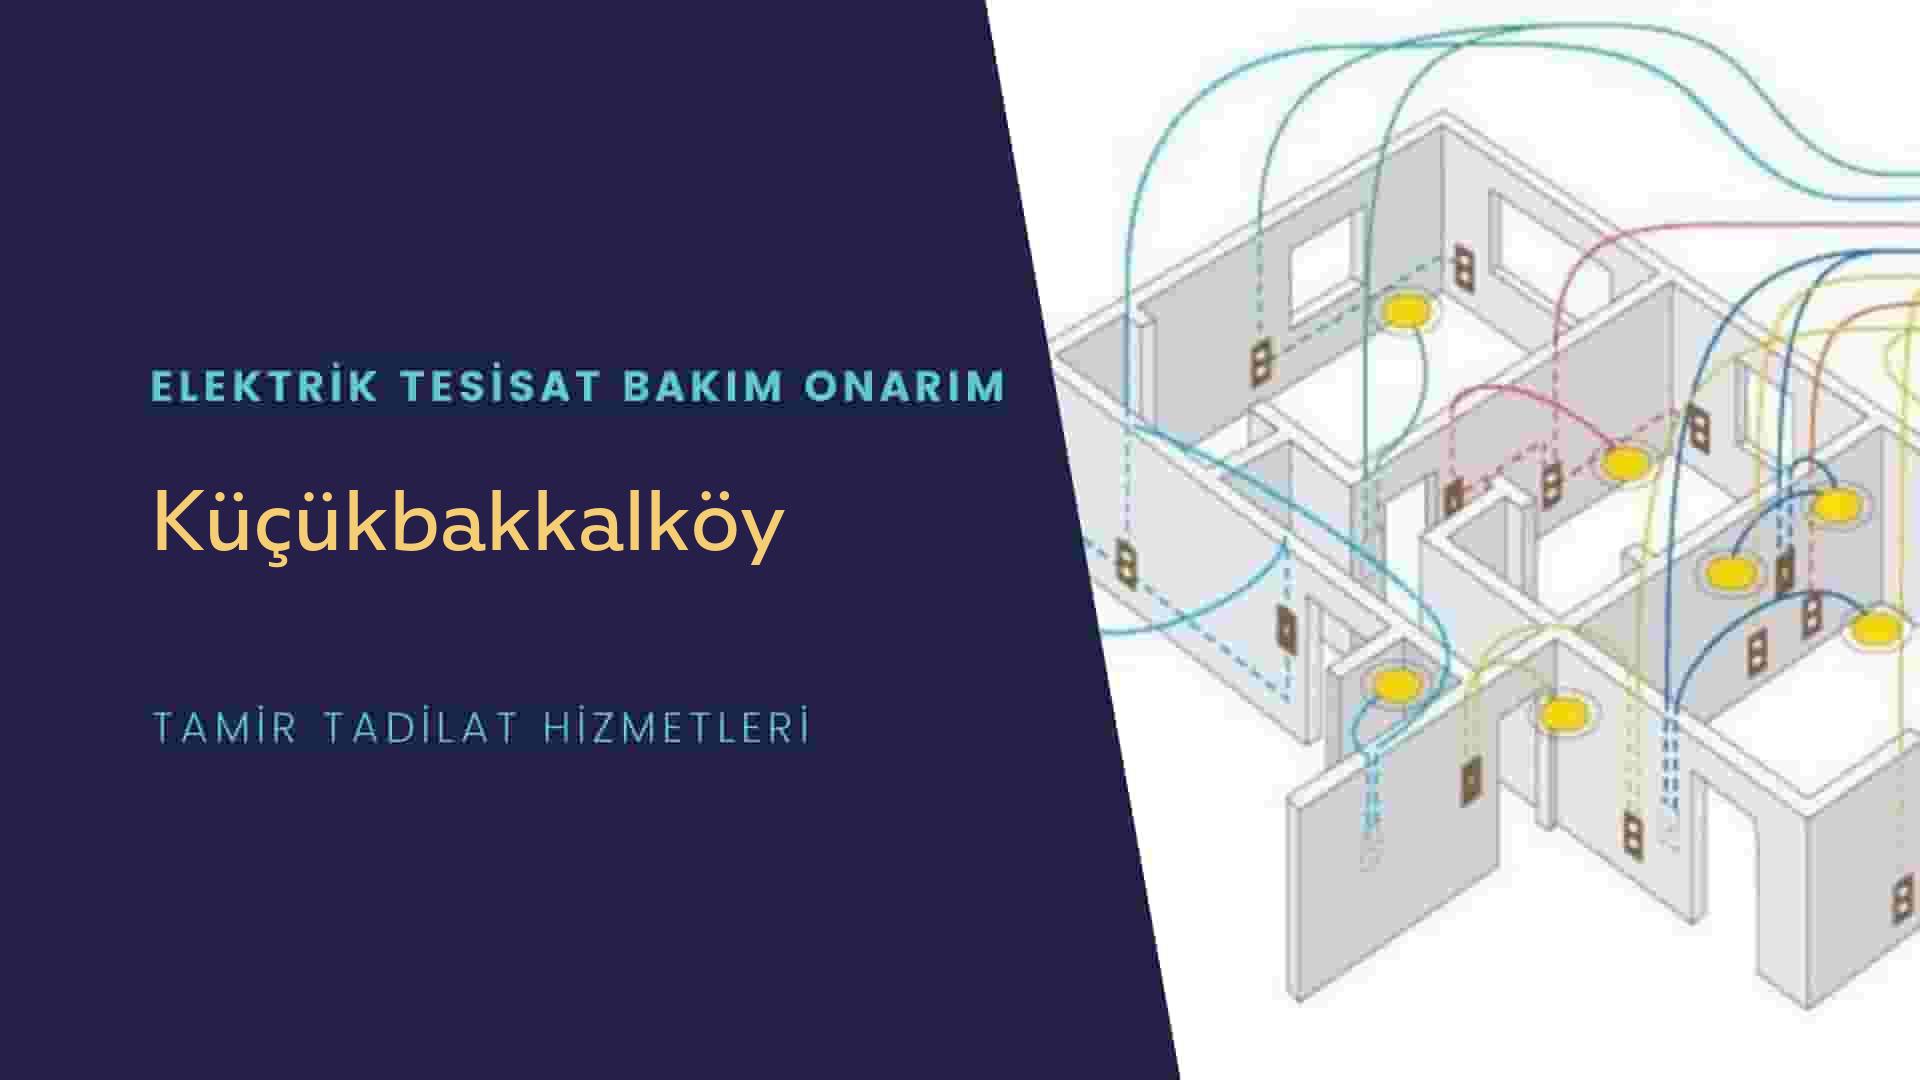 Küçükbakkalköy'de elektrik tesisatı ustalarımı arıyorsunuz doğru adrestenizi Küçükbakkalköy elektrik tesisatı ustalarımız 7/24 sizlere hizmet vermekten mutluluk duyar.